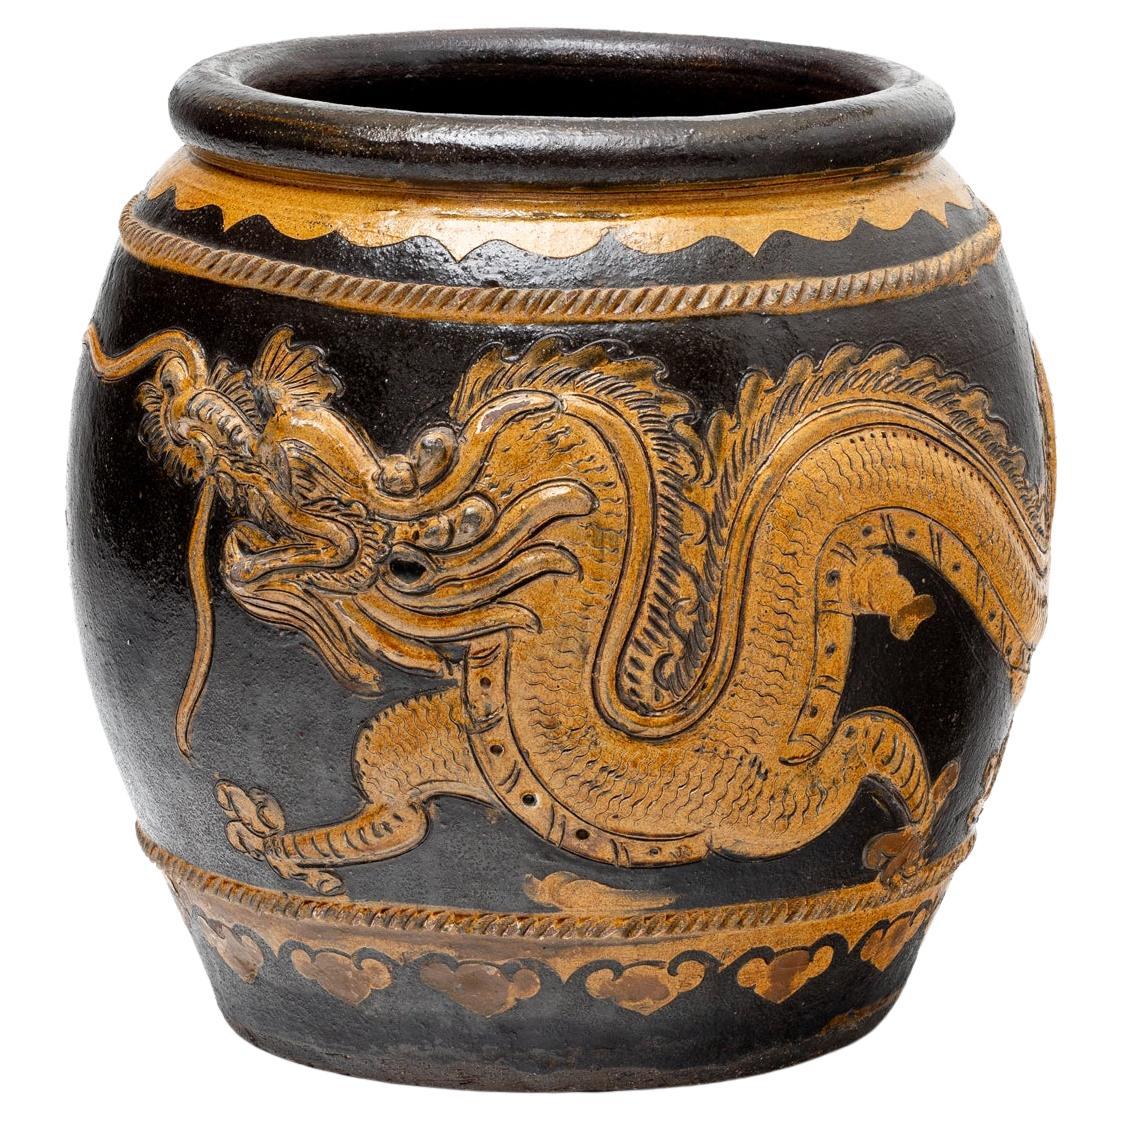 Chinesische Steingutvase aus der Qing Dynasty, verziert mit erhabenen Drachen und Symbolik